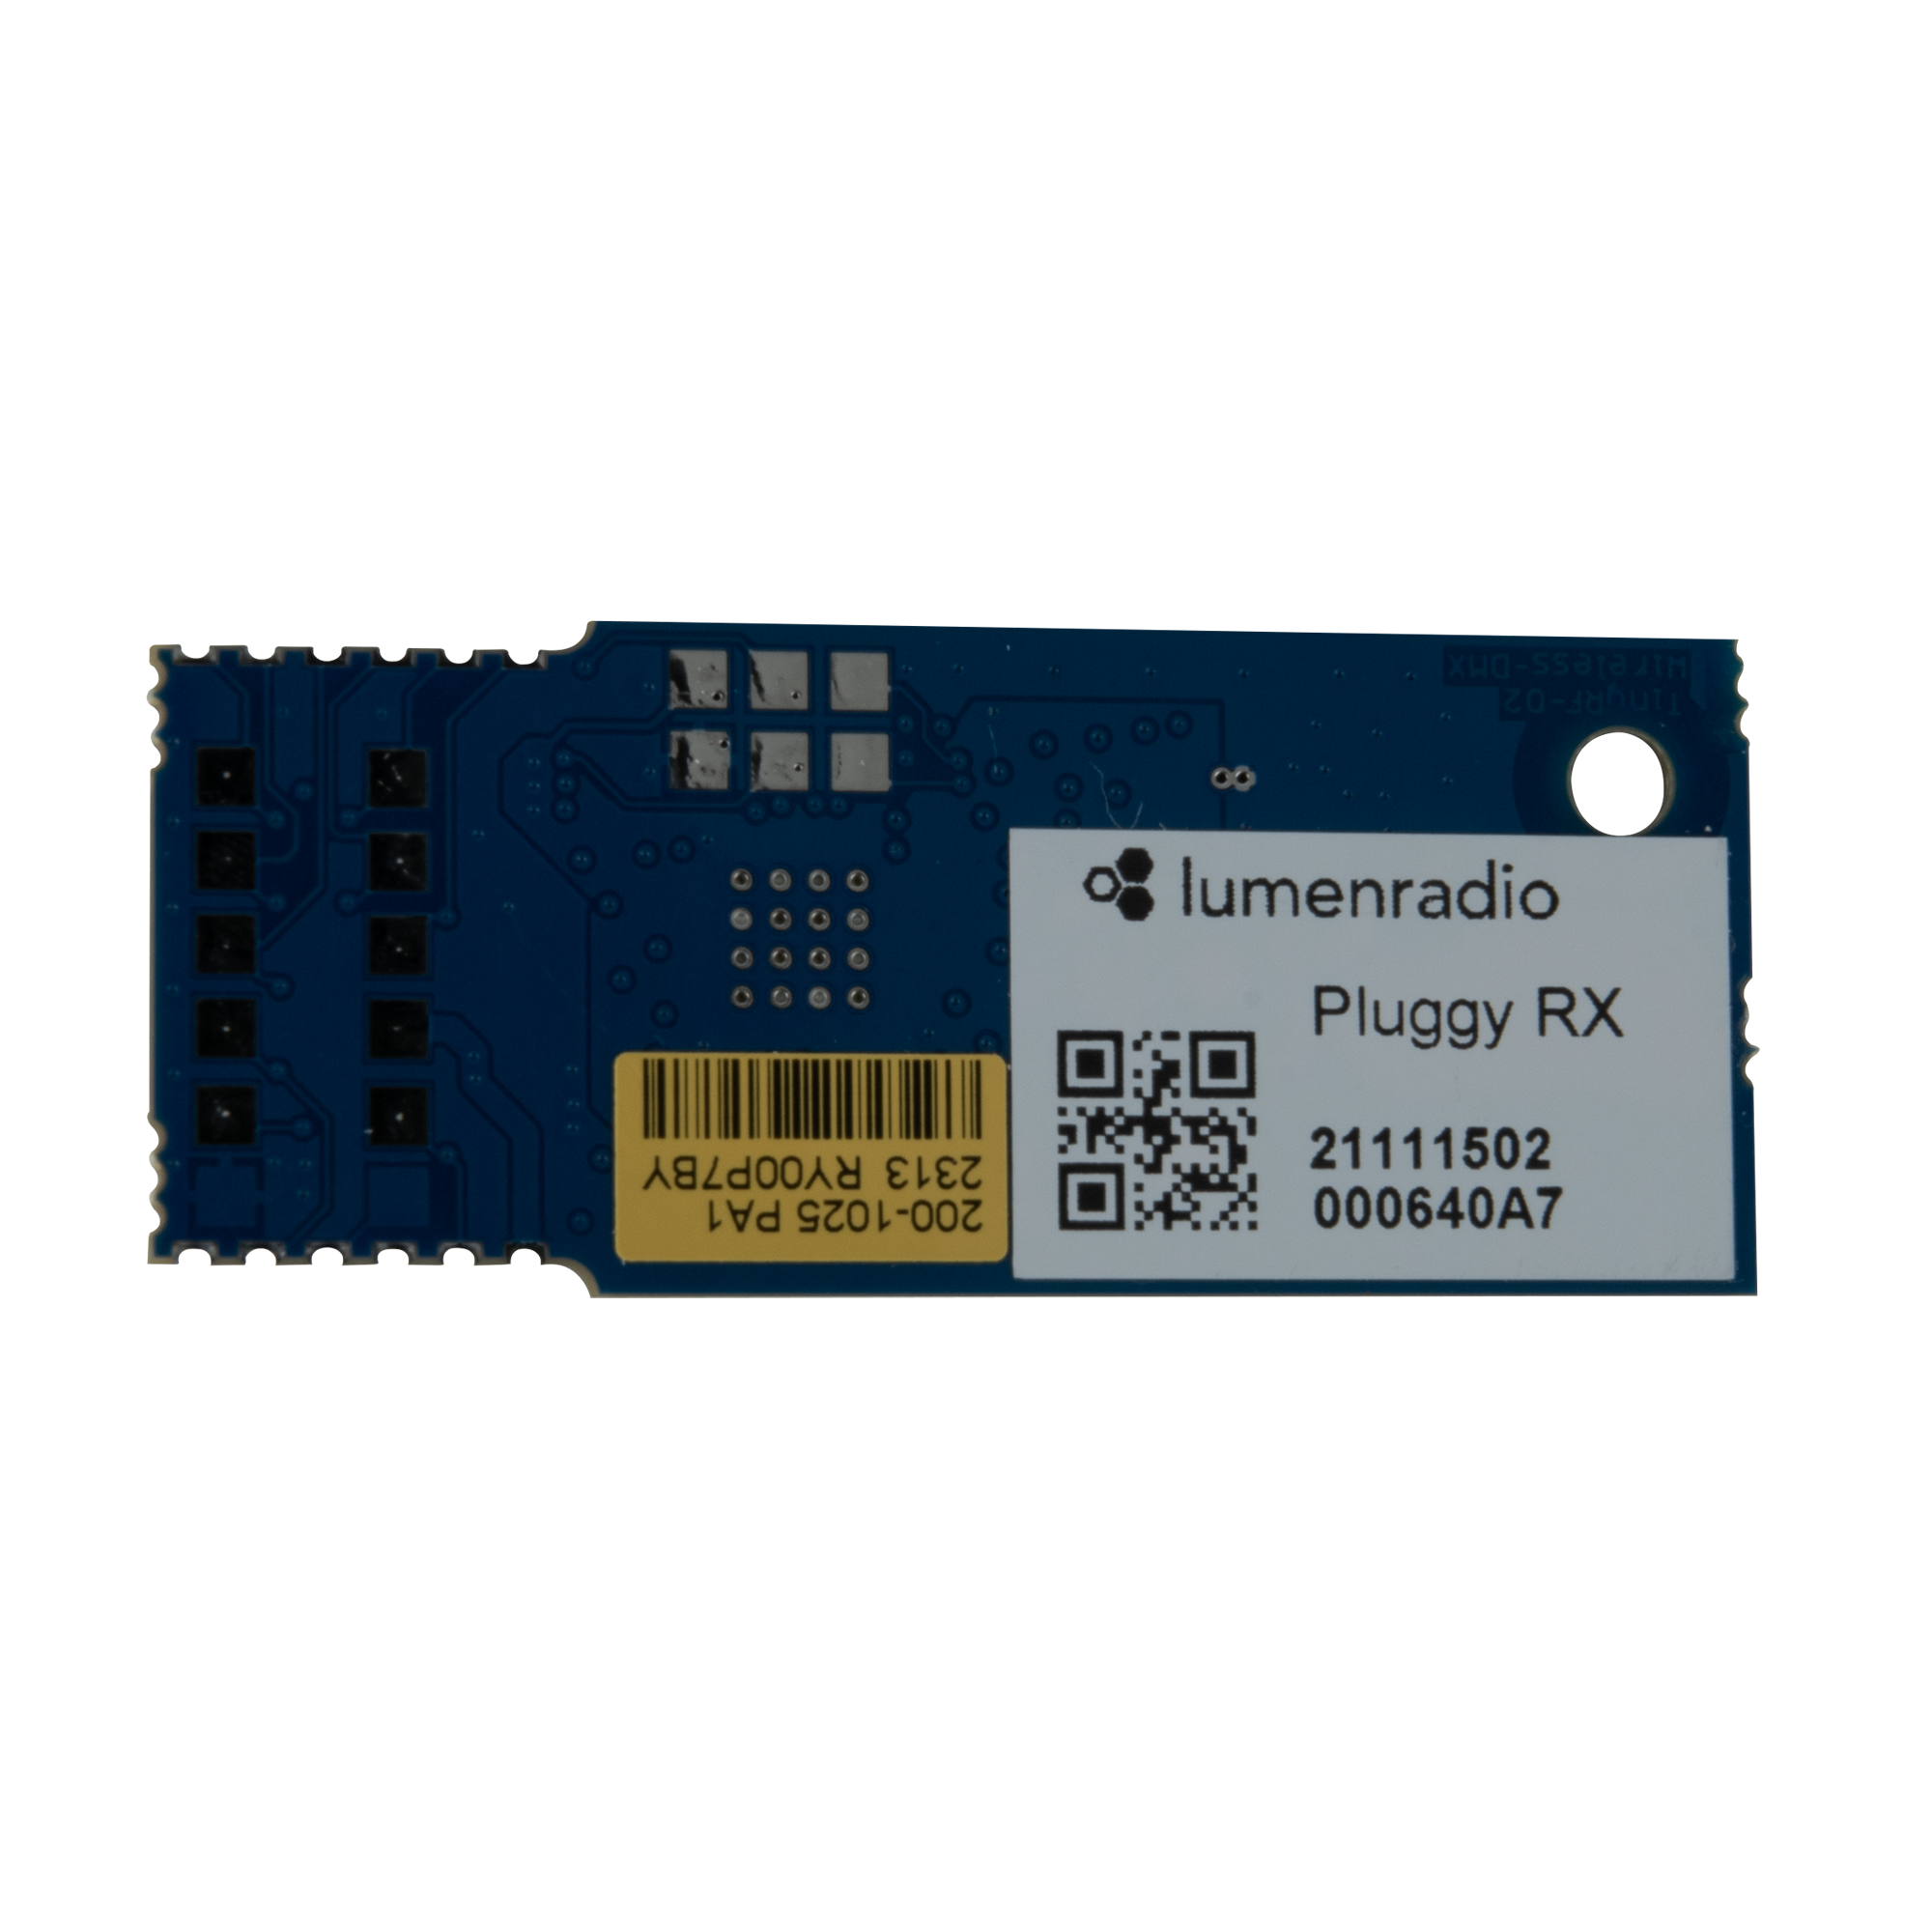  Wireless Upgrade Kit for Infinity Series CRMX-Empfänger für drahtloses DMX